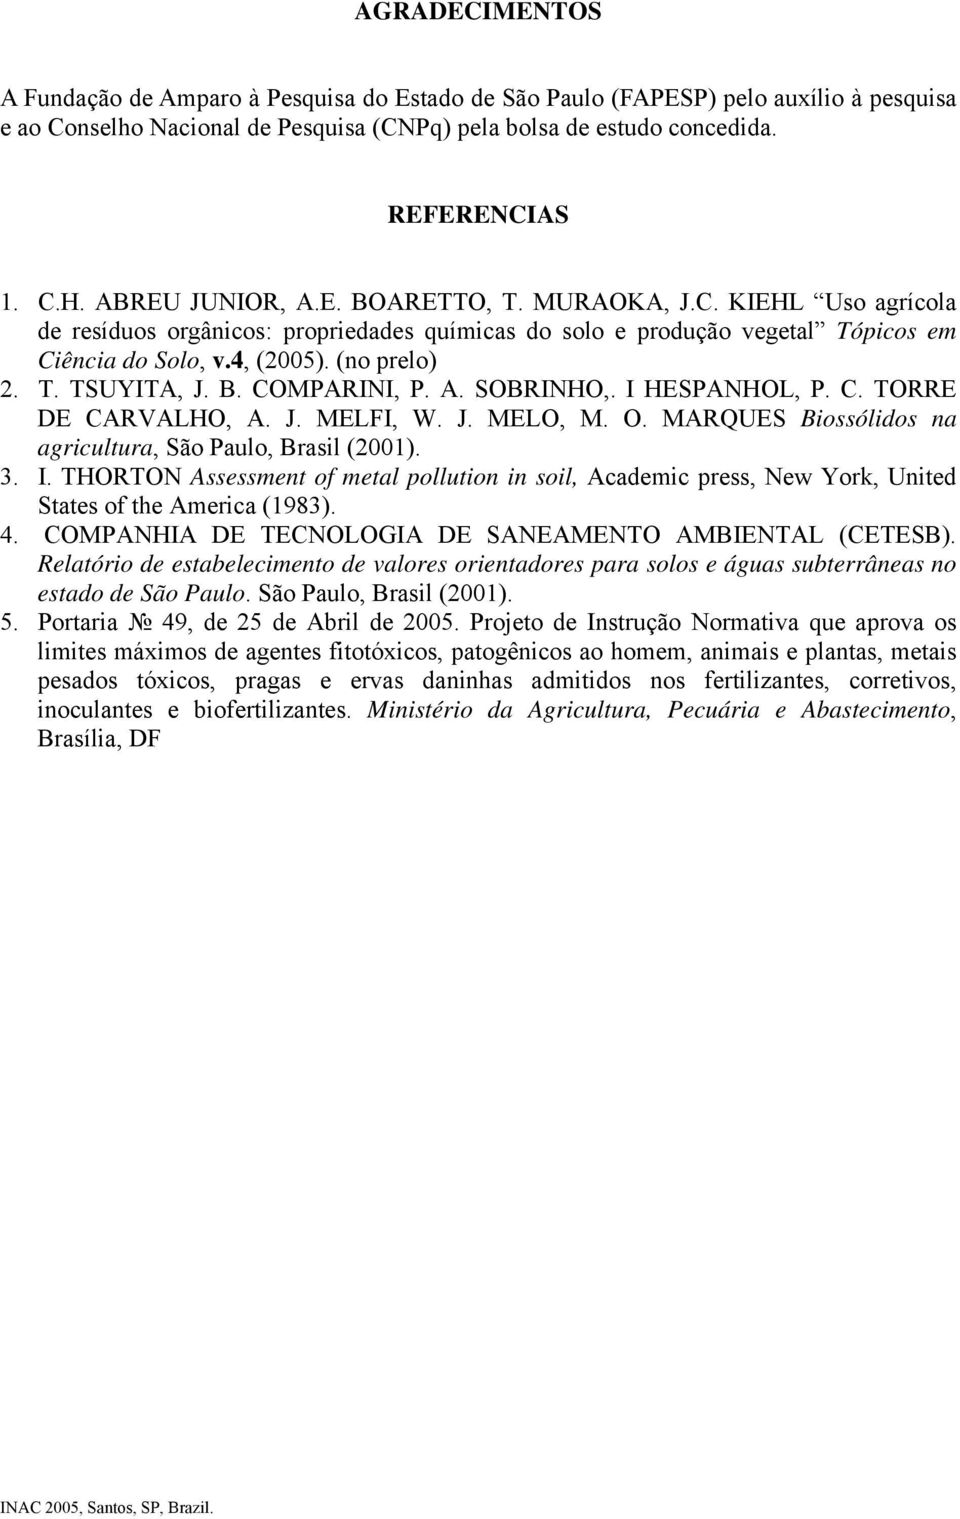 B. COMPARINI, P. A. SOBRINHO,. I HESPANHOL, P. C. TORRE DE CARVALHO, A. J. MELFI, W. J. MELO, M. O. MARQUES Biossólidos na agricultura, São Paulo, Brasil (2001). 3. I. THORTON Assessment of metal pollution in soil, Academic press, New York, United States of the America (1983).